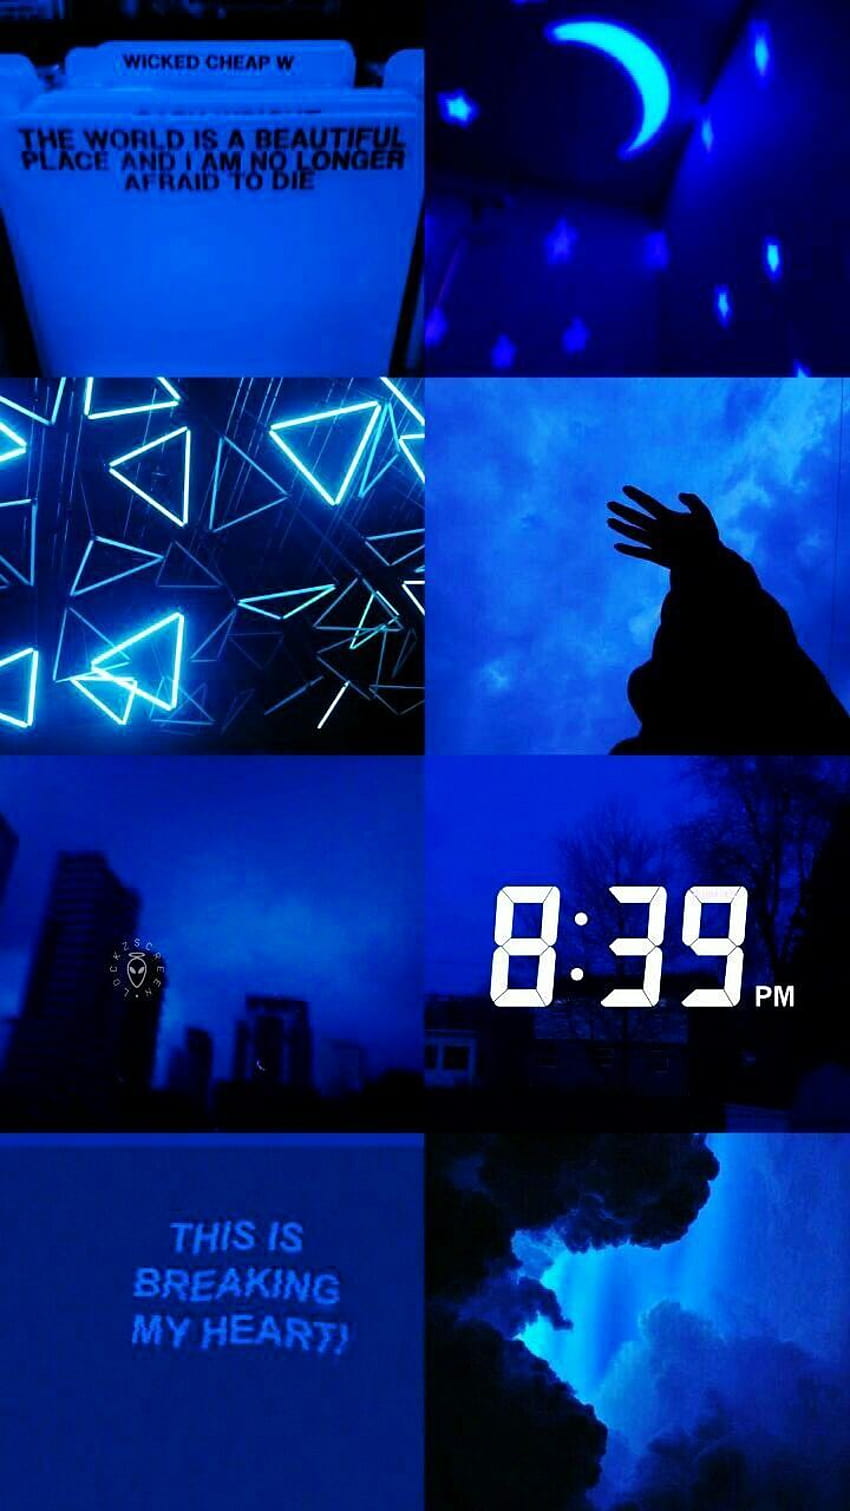 Lock screen neon blue aesthetic HD wallpapers | Pxfuel